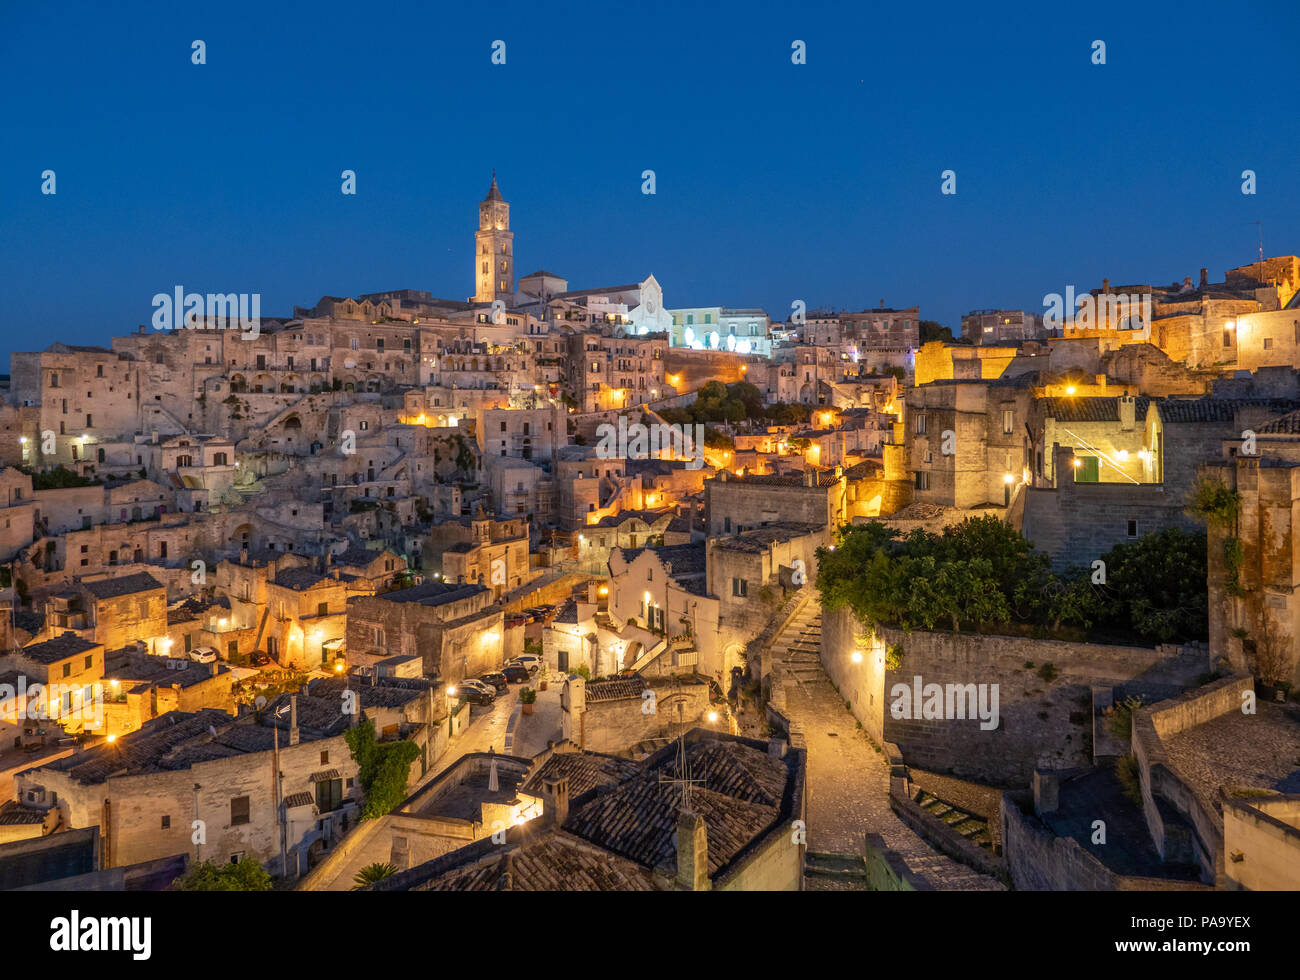 Matera (Basilicata) - El centro histórico de la maravillosa ciudad de piedra en el sur de Italia, una atracción turística para el famoso 'Sassi' ciudad vieja. Foto de stock